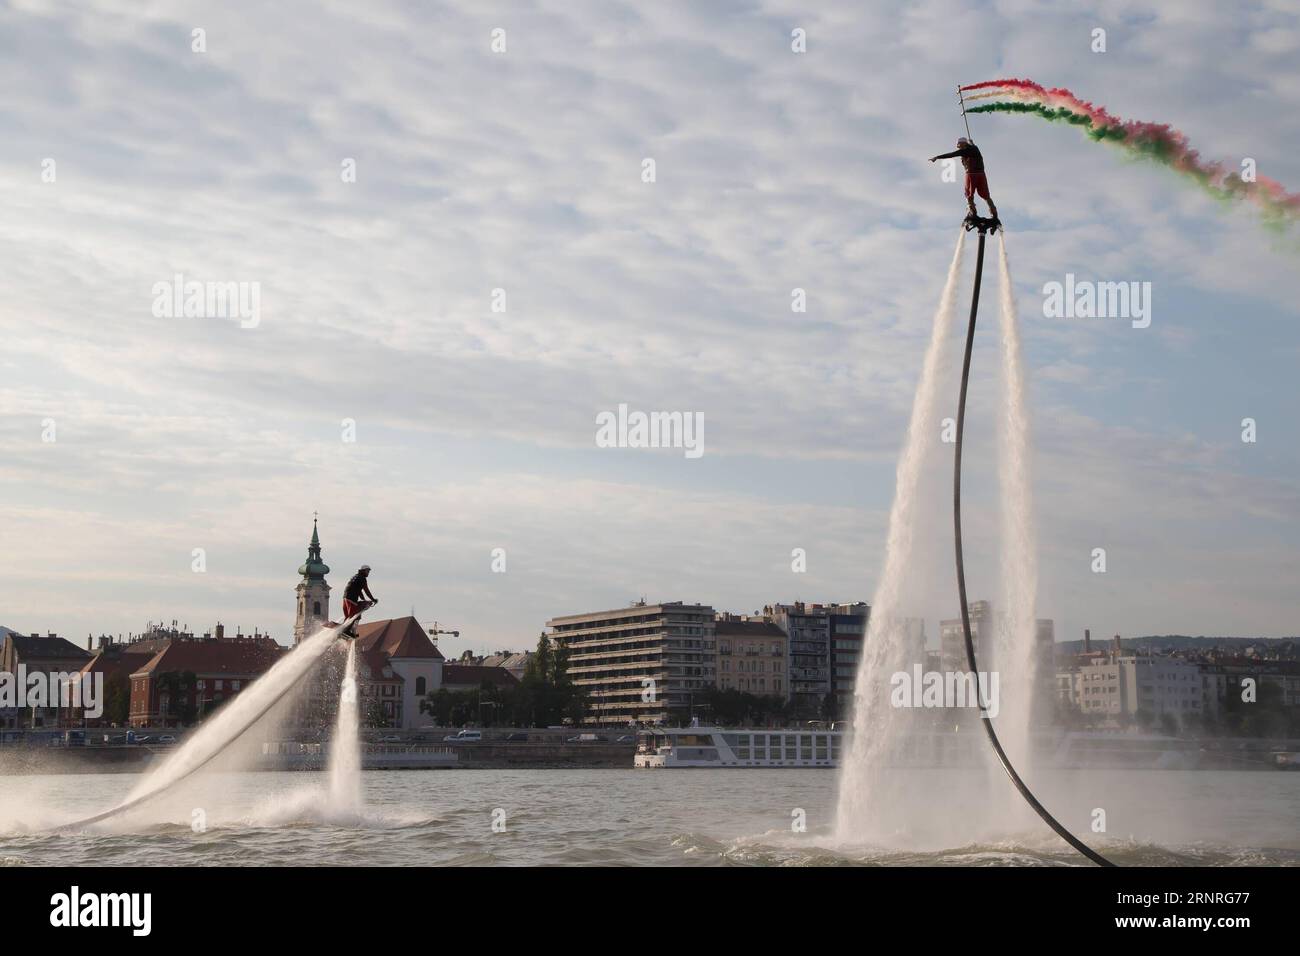 (170930) -- BUDAPEST, 30 septembre 2017 -- des pilotes de flyboard jouent avec des flyboards propulsés par l'eau sur le Danube à Budapest, Hongrie, le 29 septembre 2017.) (SP)HONGRIE-BUDAPEST-FLYBOARD-SPORT EXTRÊME ATTILAXVOLGYI PUBLICATIONXNOTXINXCHN Banque D'Images